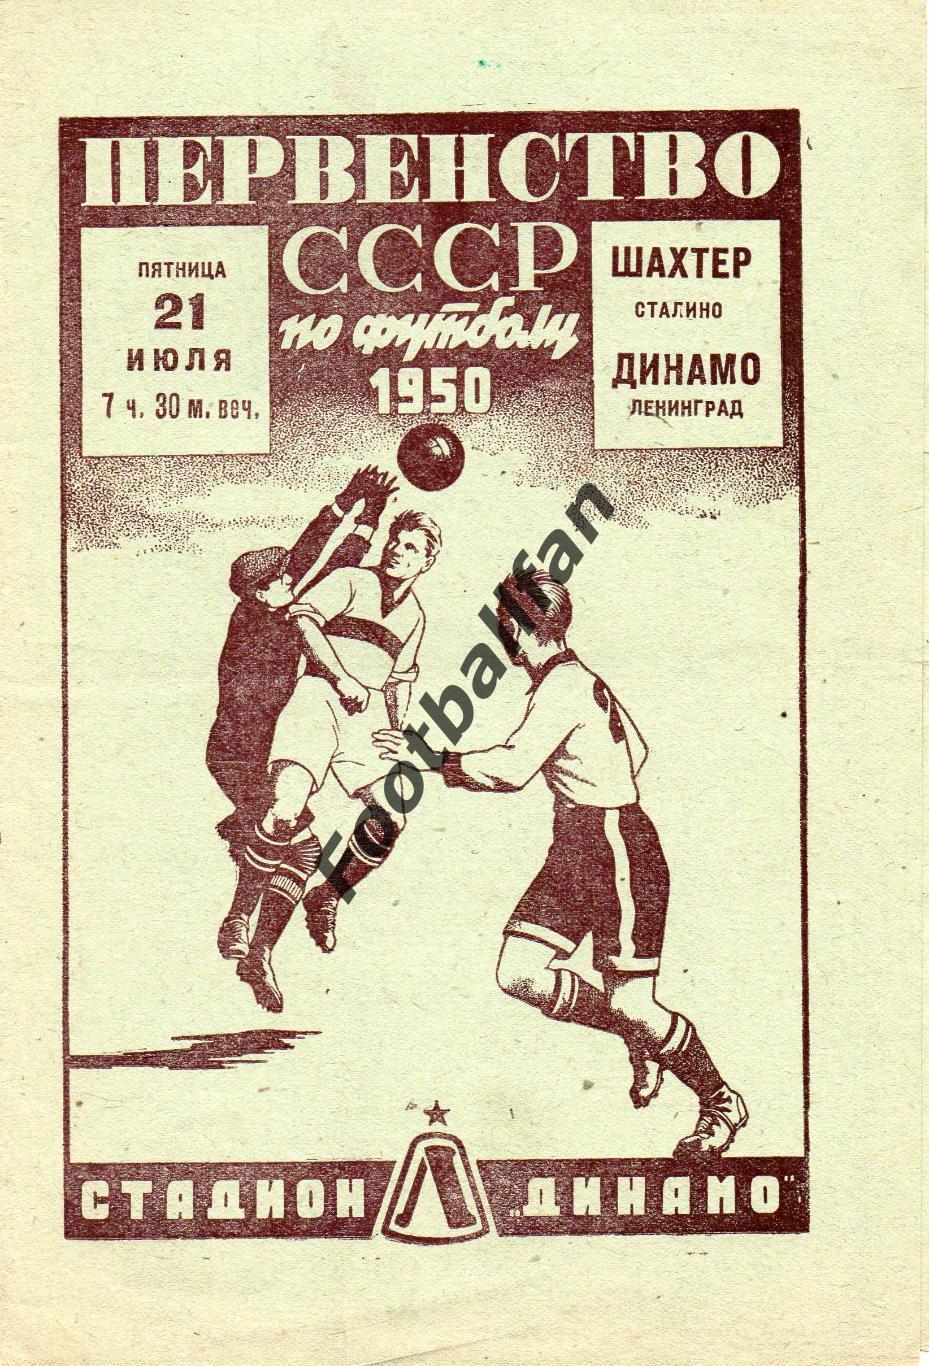 Динамо Ленинград - Шахтер Сталино ( Донецк ) 21.07.1950